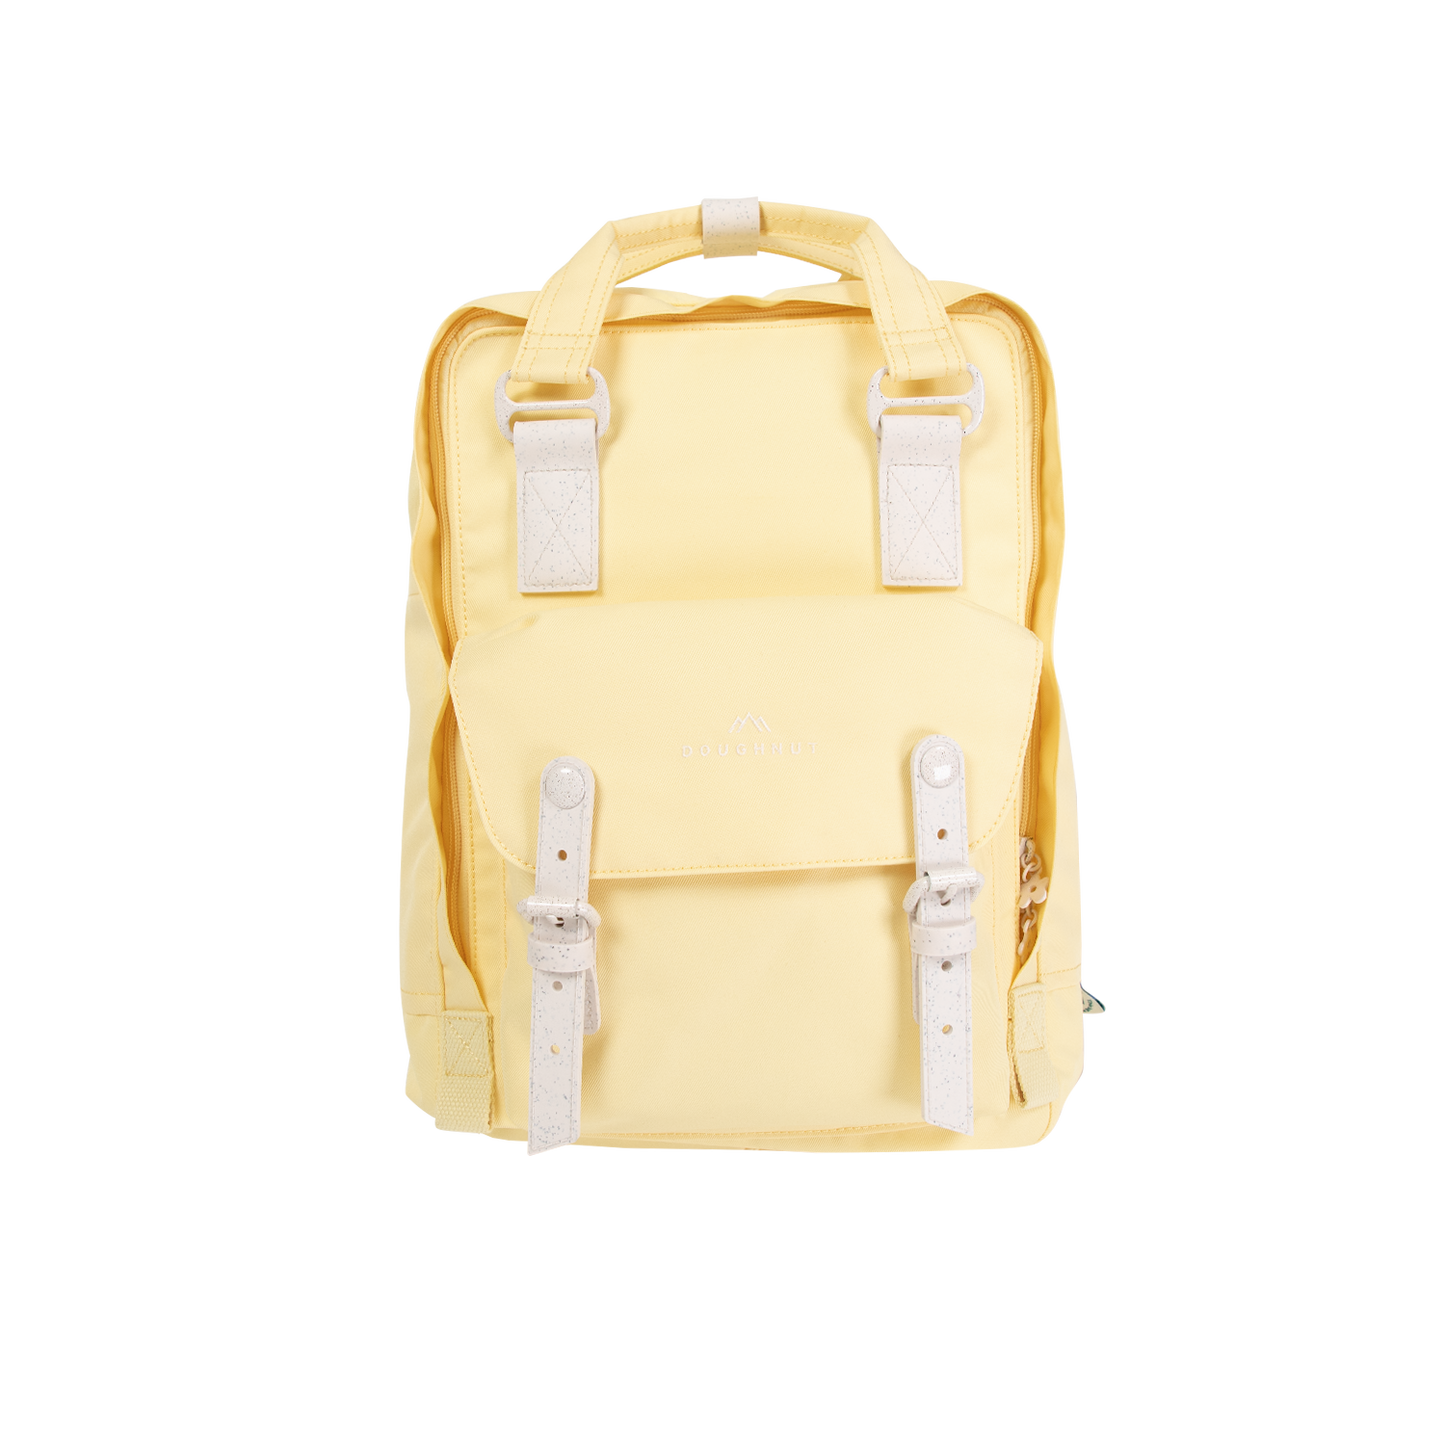 Macaroon Monet Series Backpack